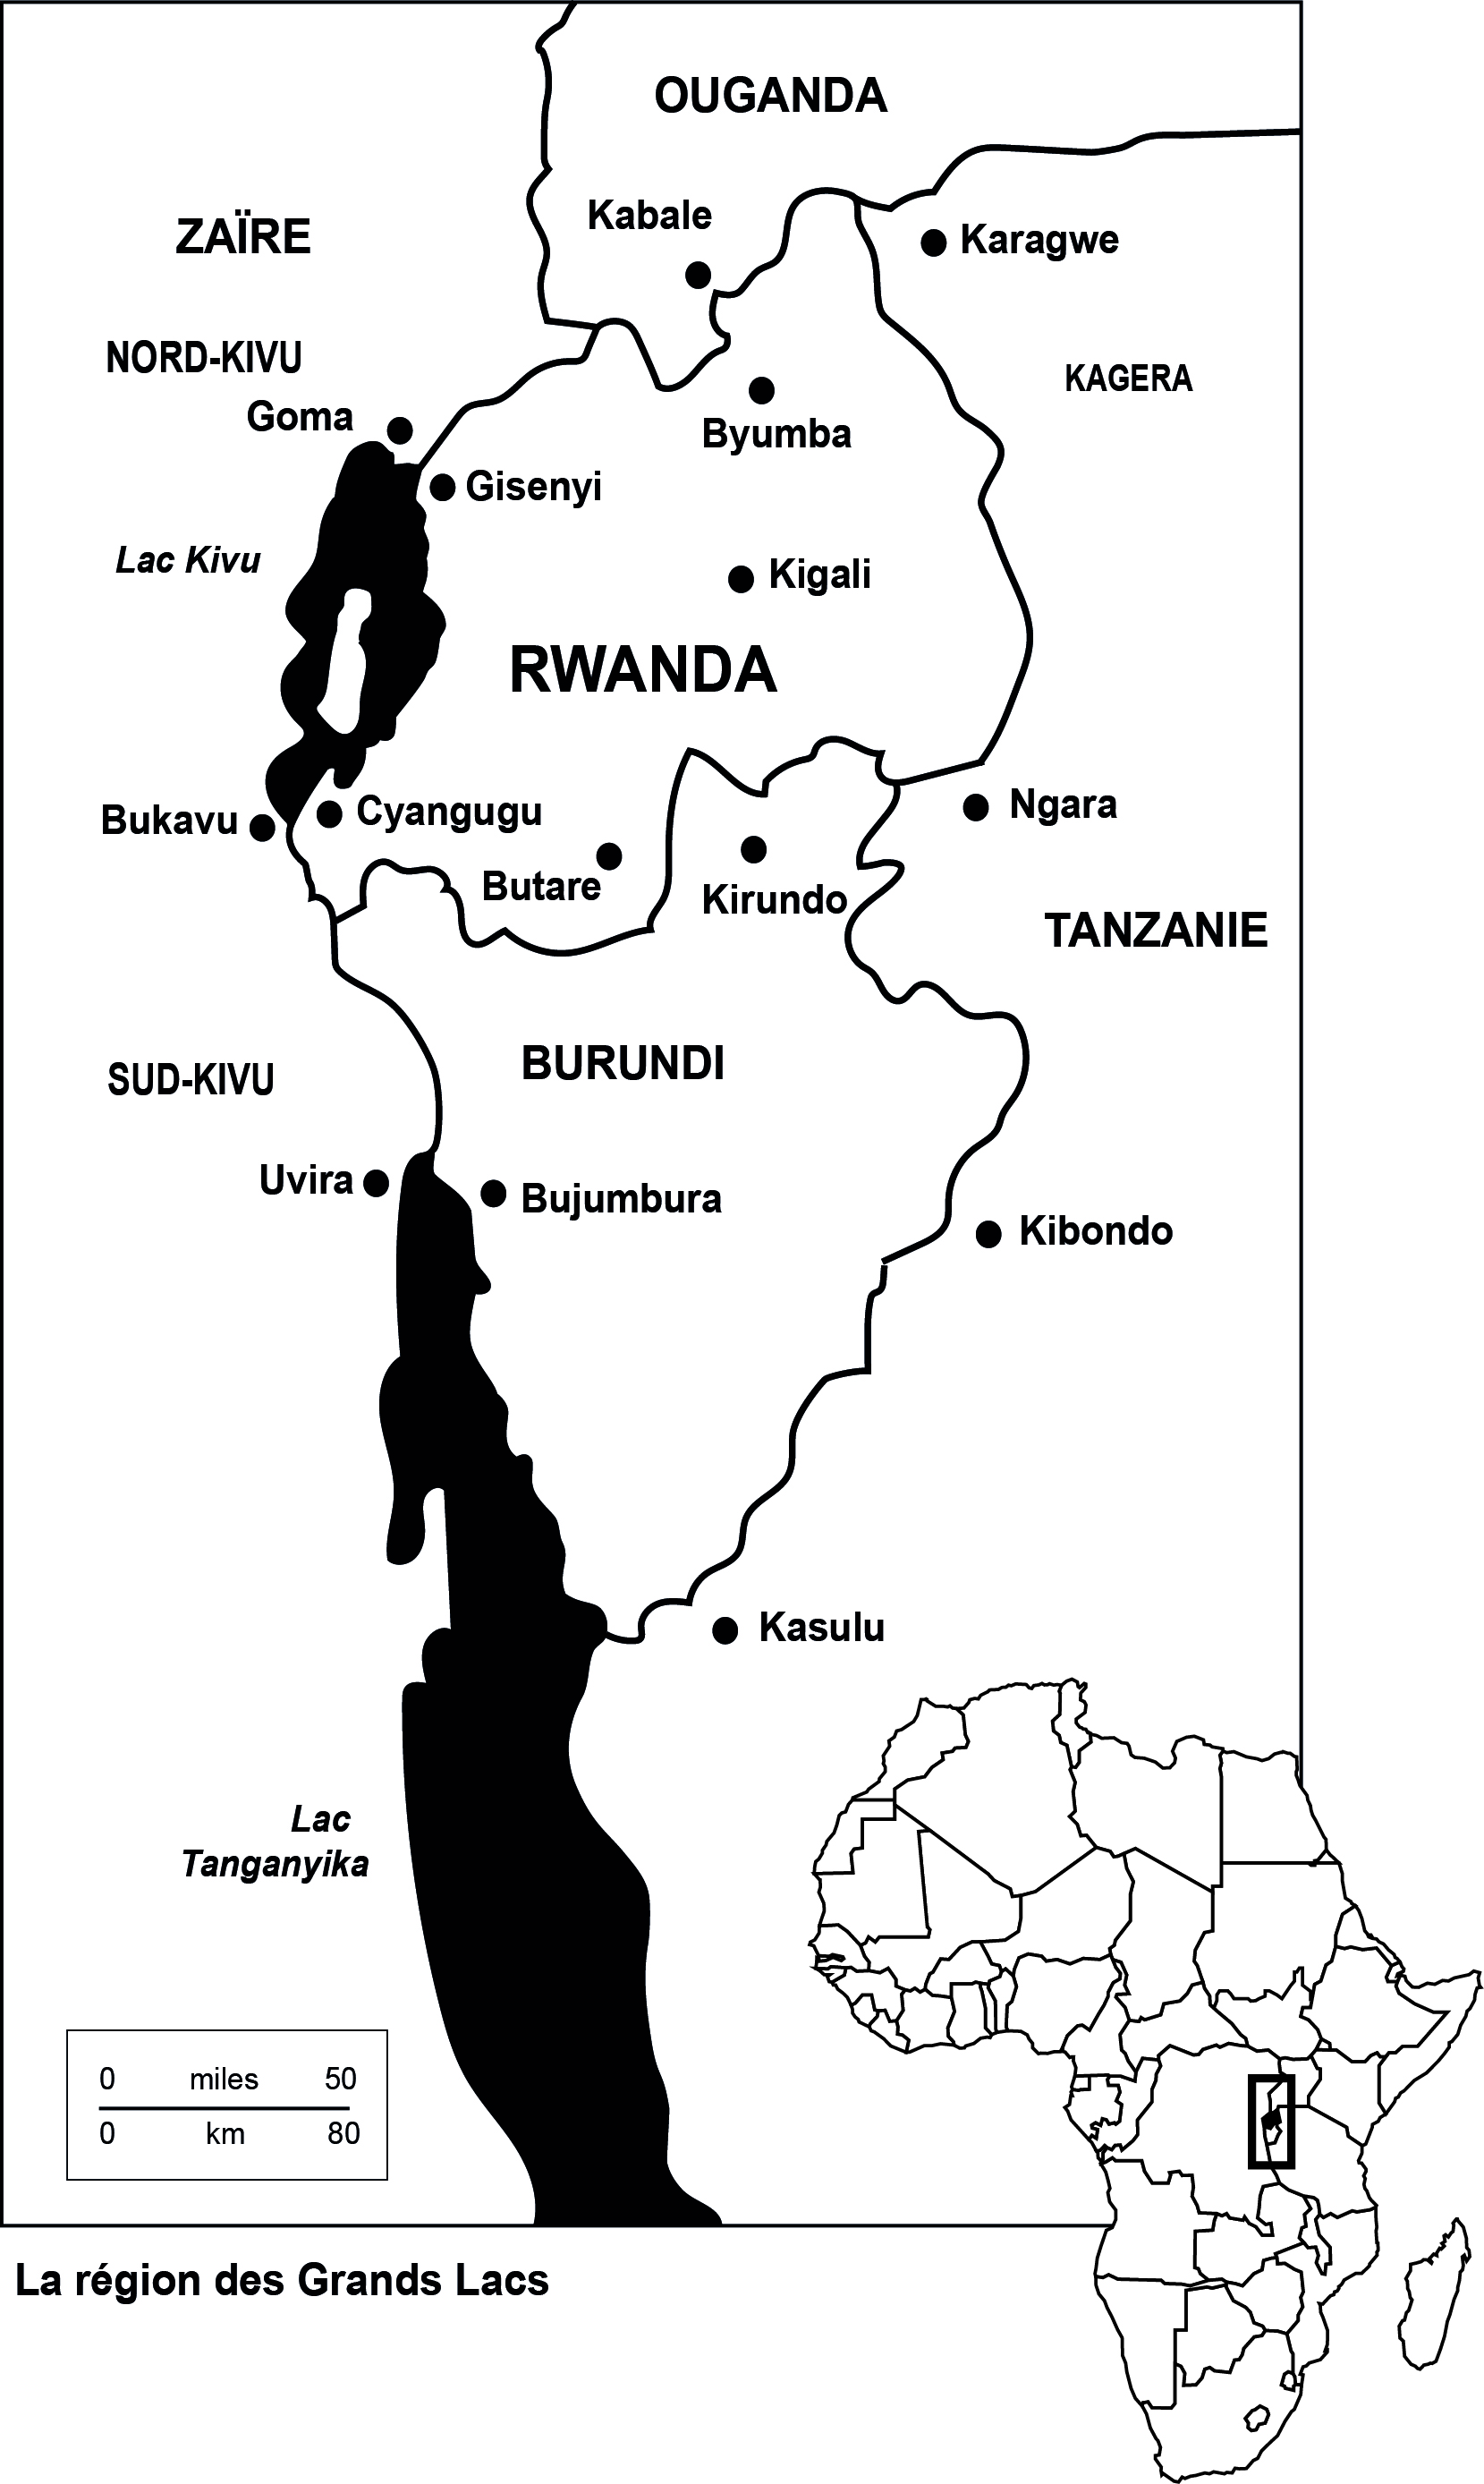 La région des grands lacs. Editée par les auteurs à partir de la carte publiée in Evaluation conjointe de l'aide d'ugence au Rwanda, Rapport de synthèse, Copenhague, 1996, p. 8.